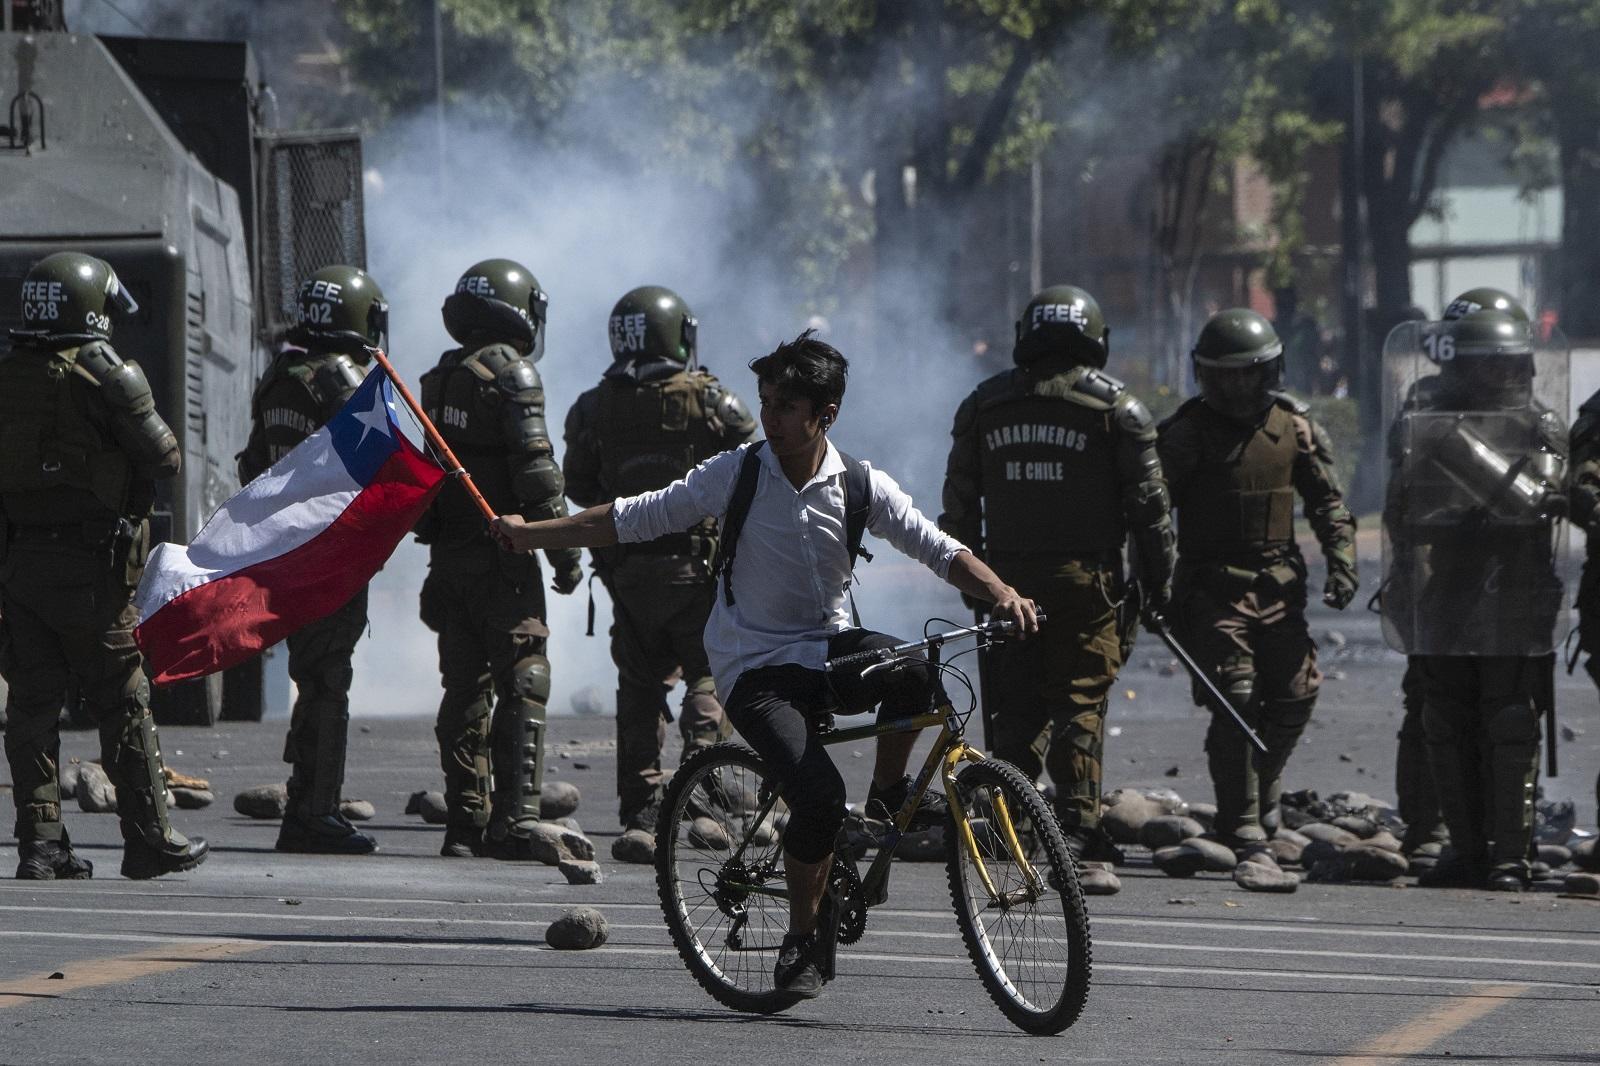 متظاهر على دراجة يلوح بعلم شيلي خلال اشتباك مع شرطة مكافحة الشغب في سانتياغو. 21 أكتوبر 2019. (أ ف ب)